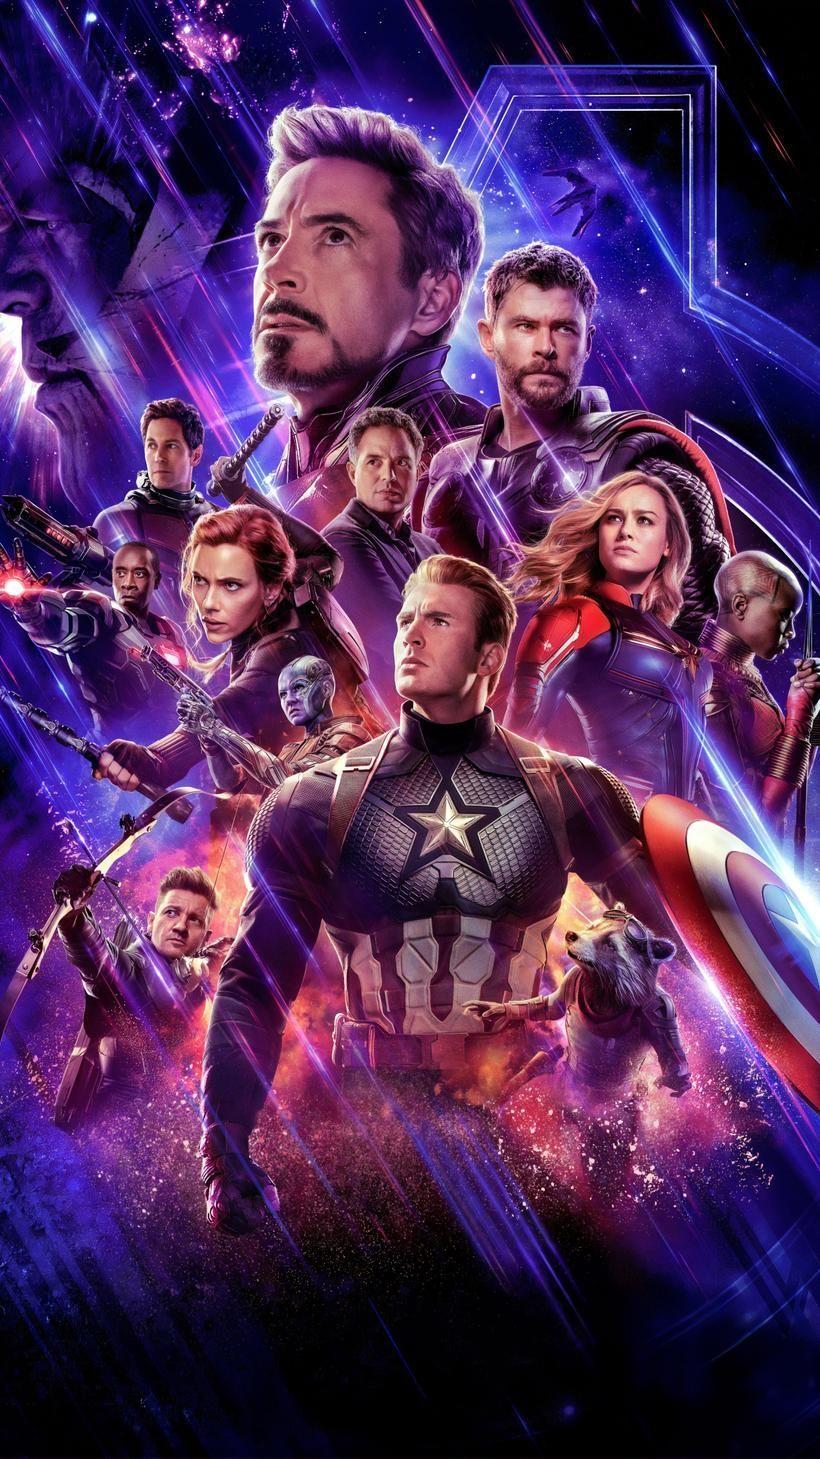 Hình nền Avengers điện thoại sẽ giúp bạn thể hiện sự yêu thích của mình với nhóm siêu anh hùng này. Cập nhật kiểu dáng mới cho điện thoại của bạn với các thiết kế độc đáo và sáng tạo, để bạn luôn nổi bật và tự tin.